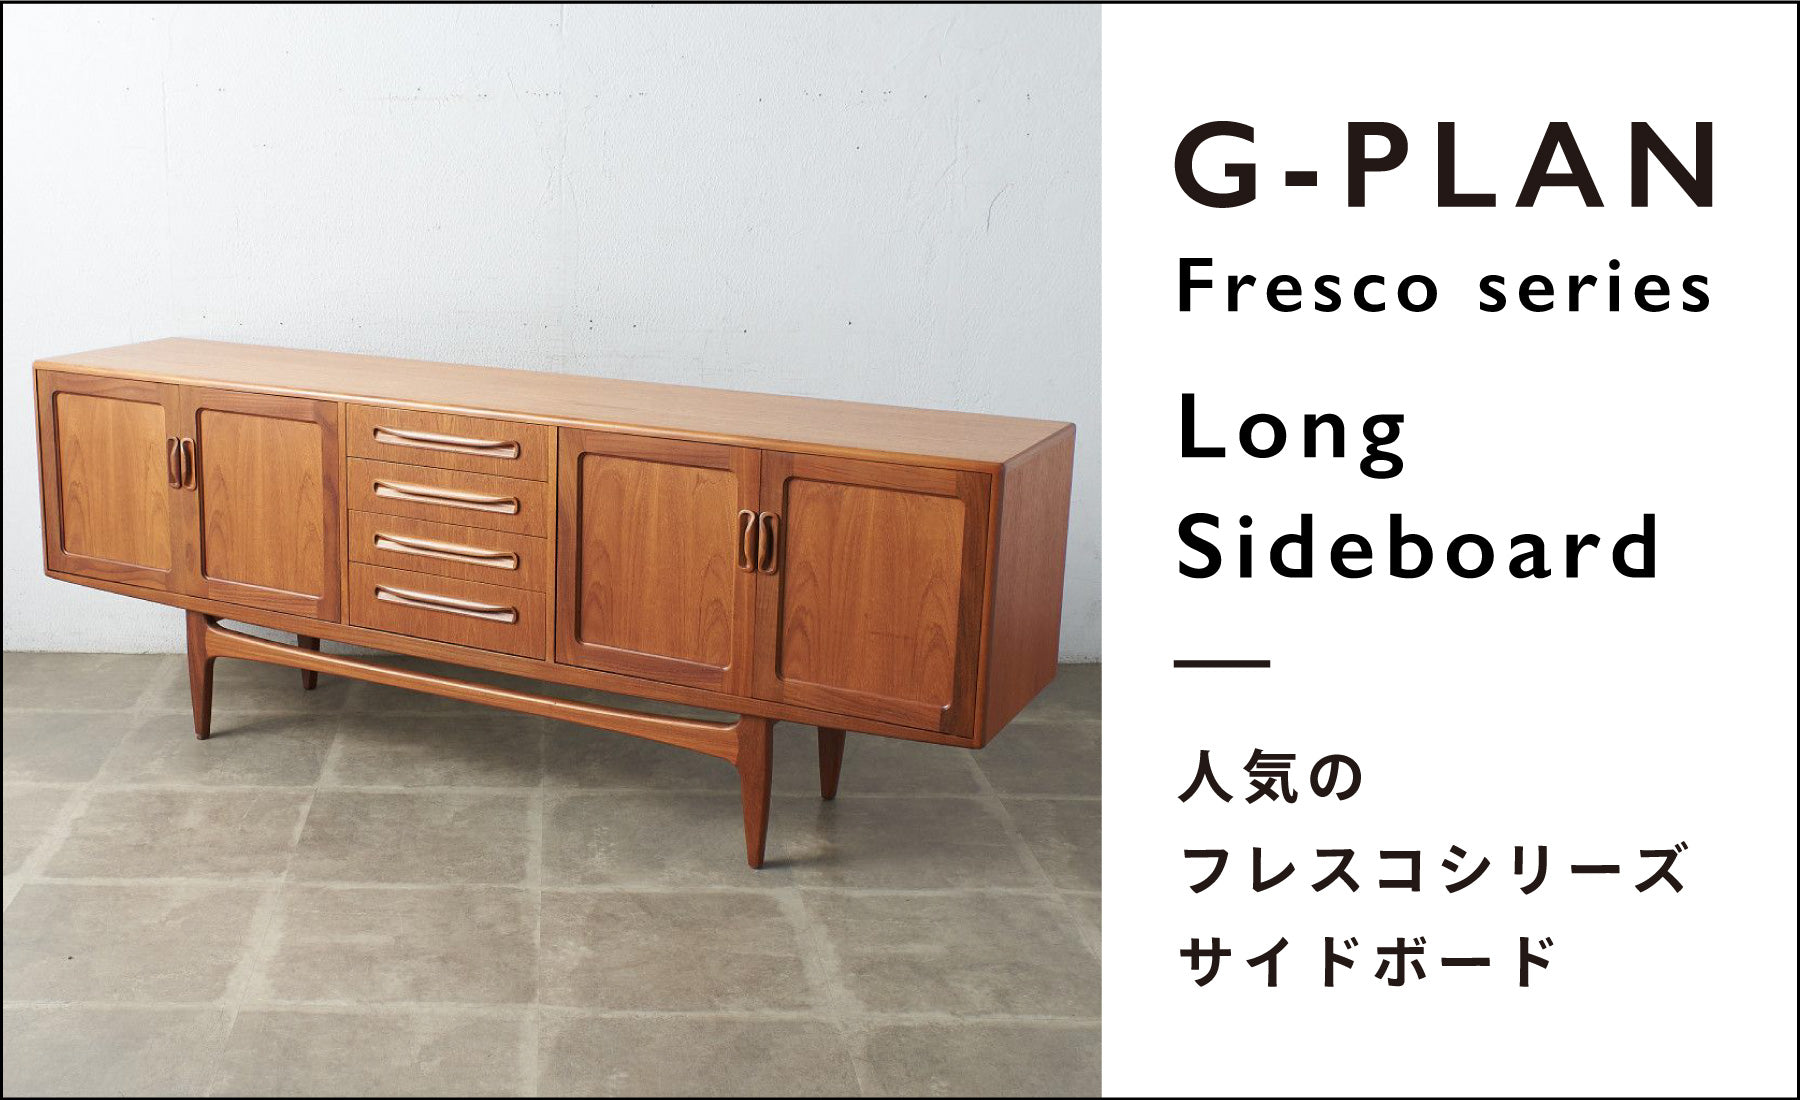 人気のG-PLAN Frescoシリーズ ロングジョンサイドボード – camori